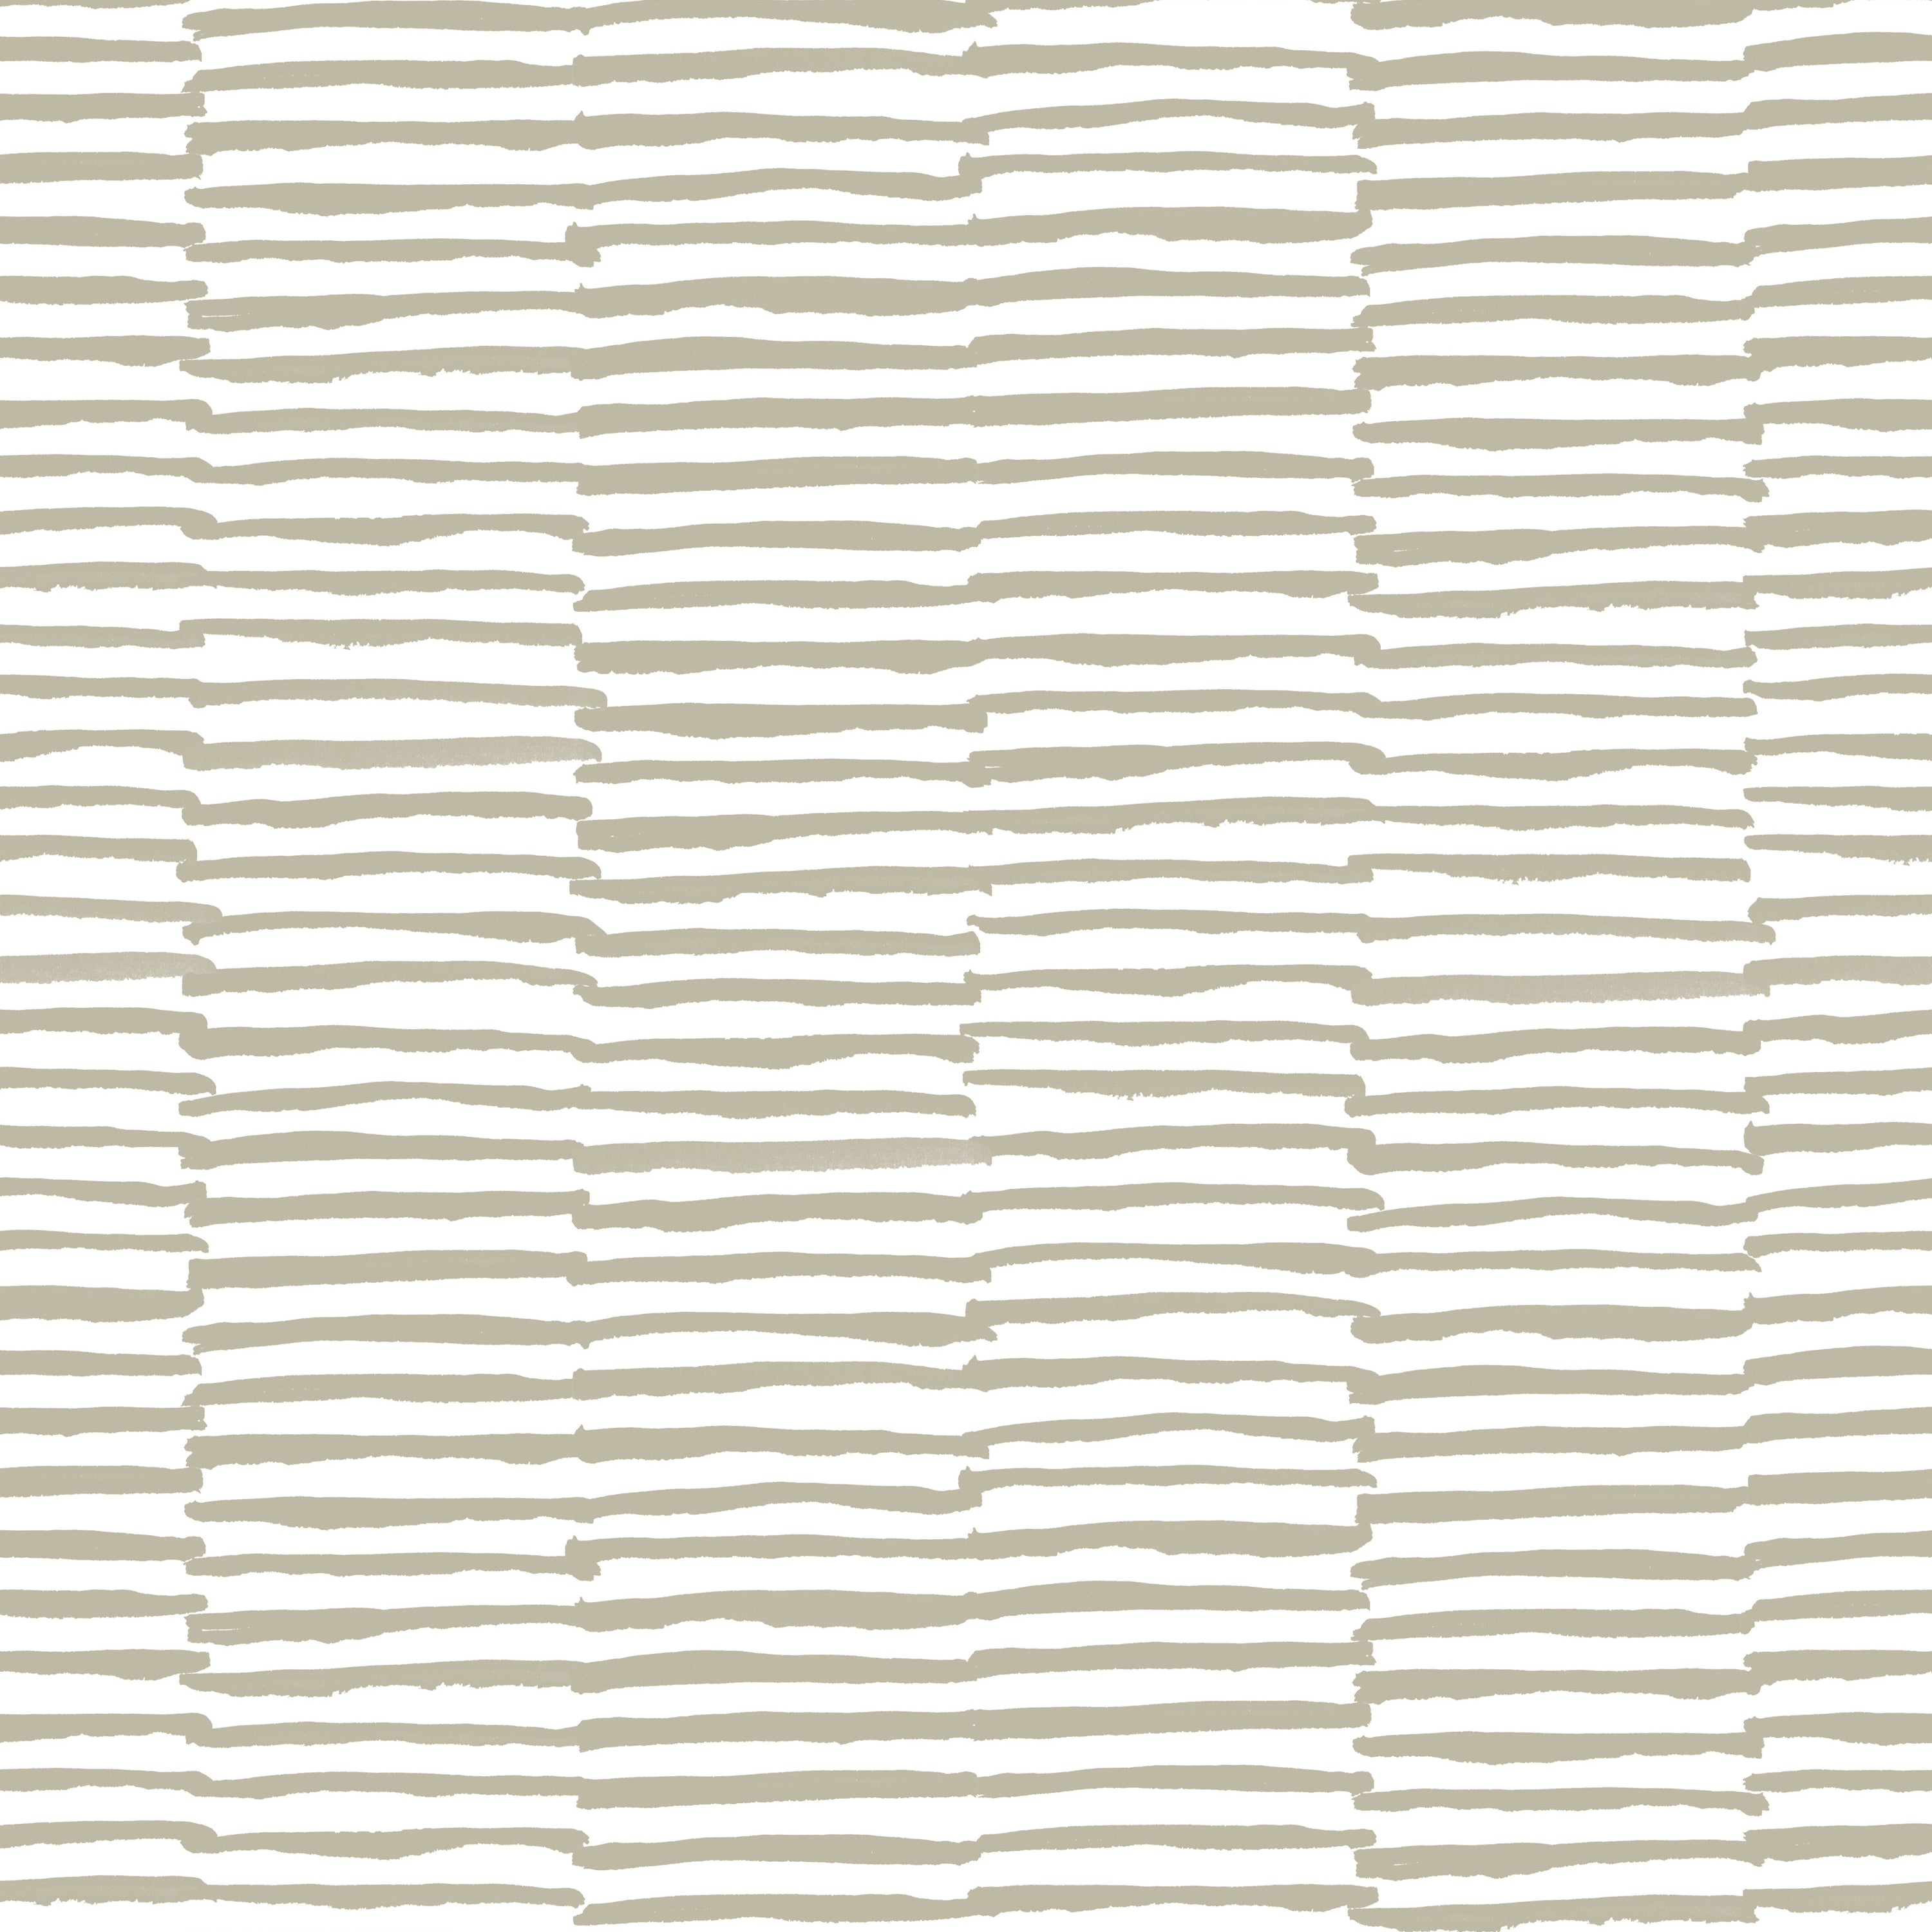 Detail of wallpaper in a broken stripe print in tan on a white field.